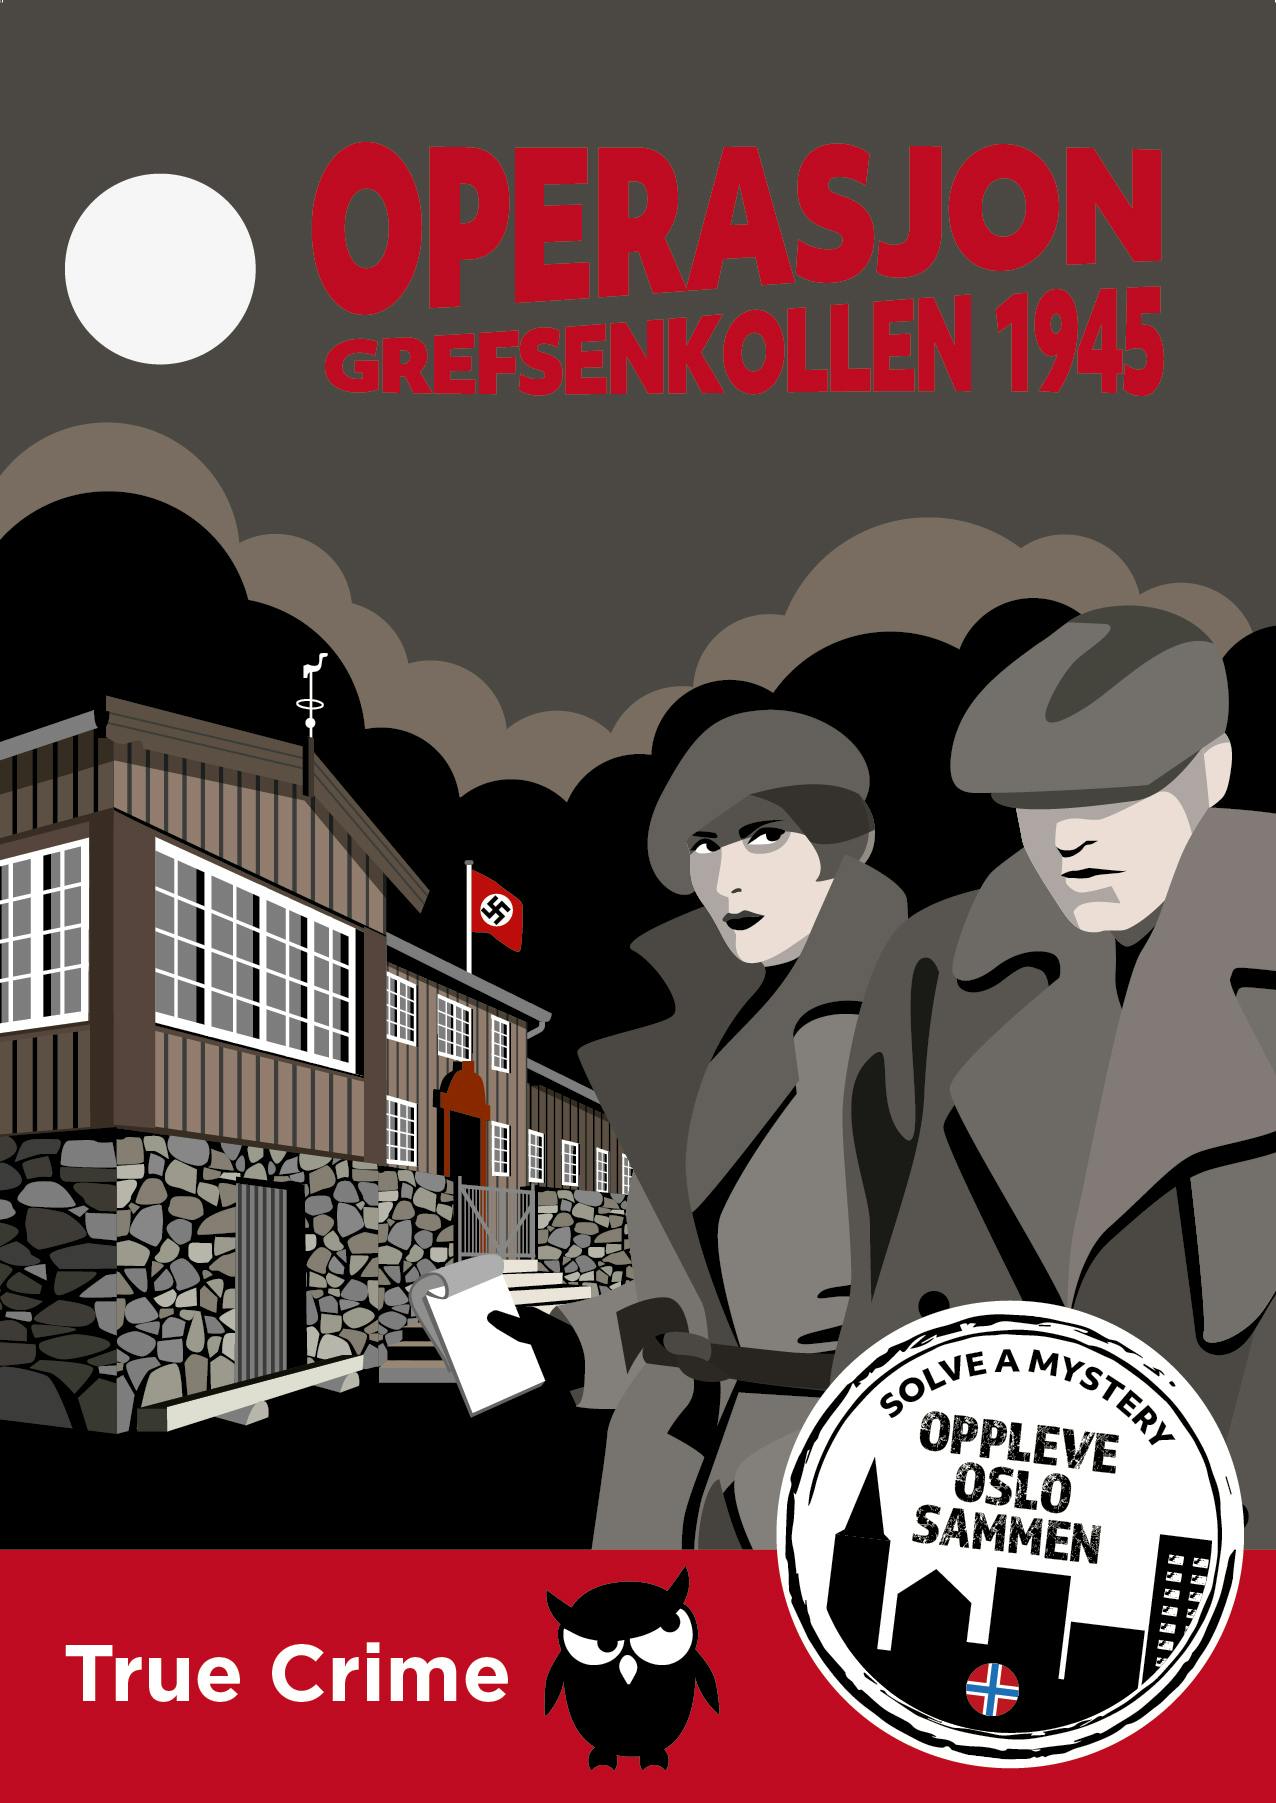 Solve the mystery mission Grefsenkollen 1945 Musement